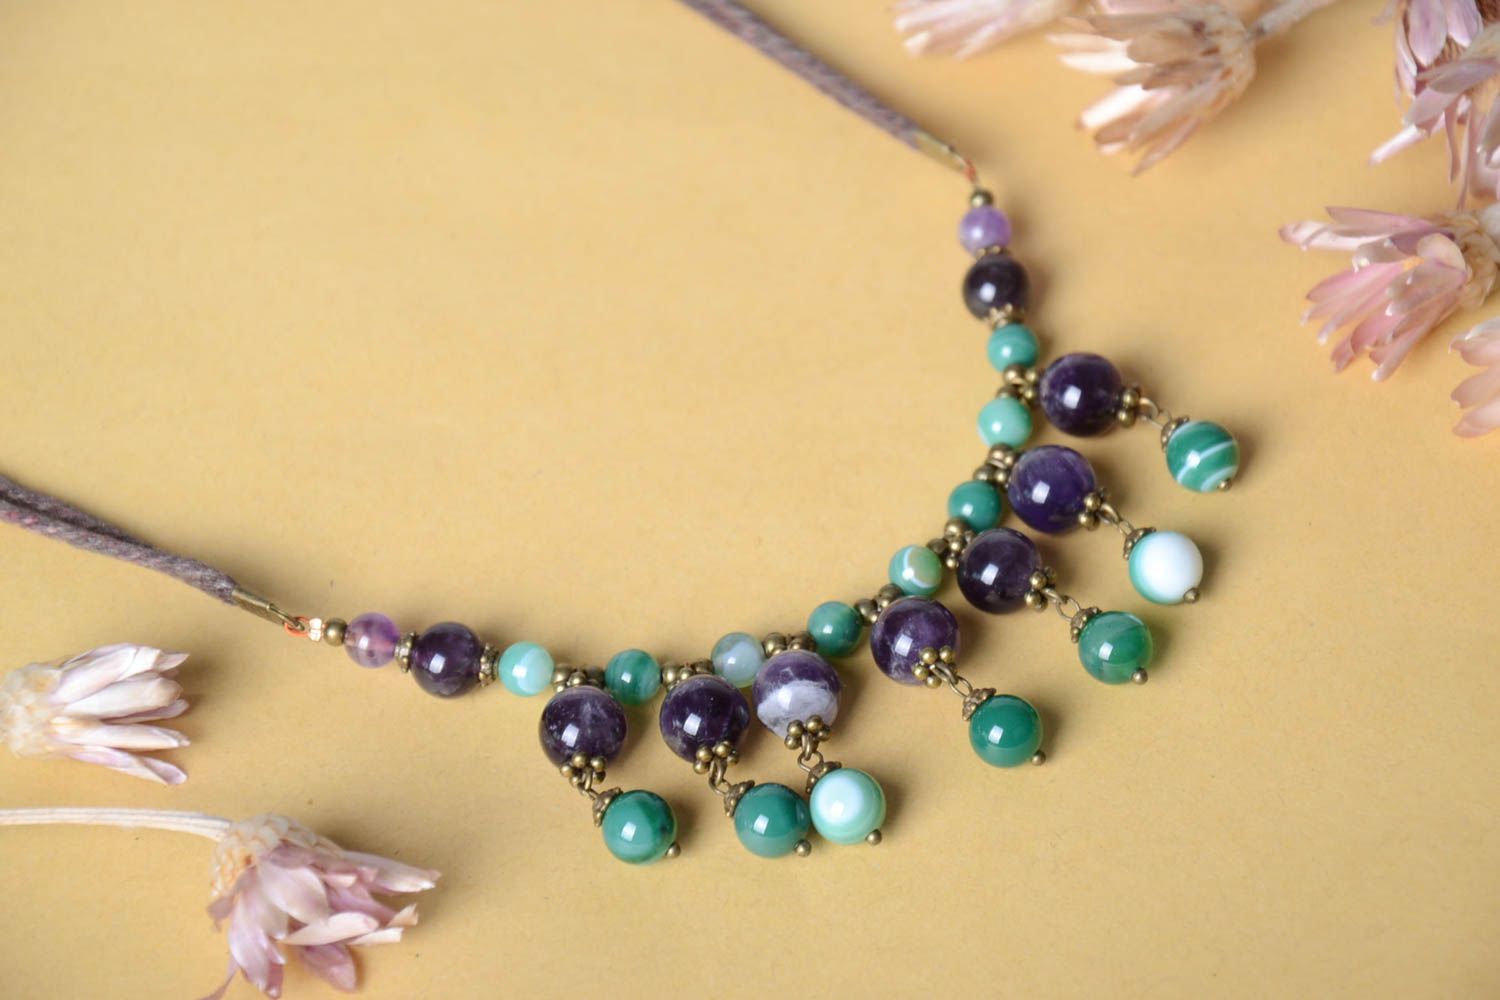 Handmade beaded elegant necklace stylish unusual jewelry natural stone necklace photo 1